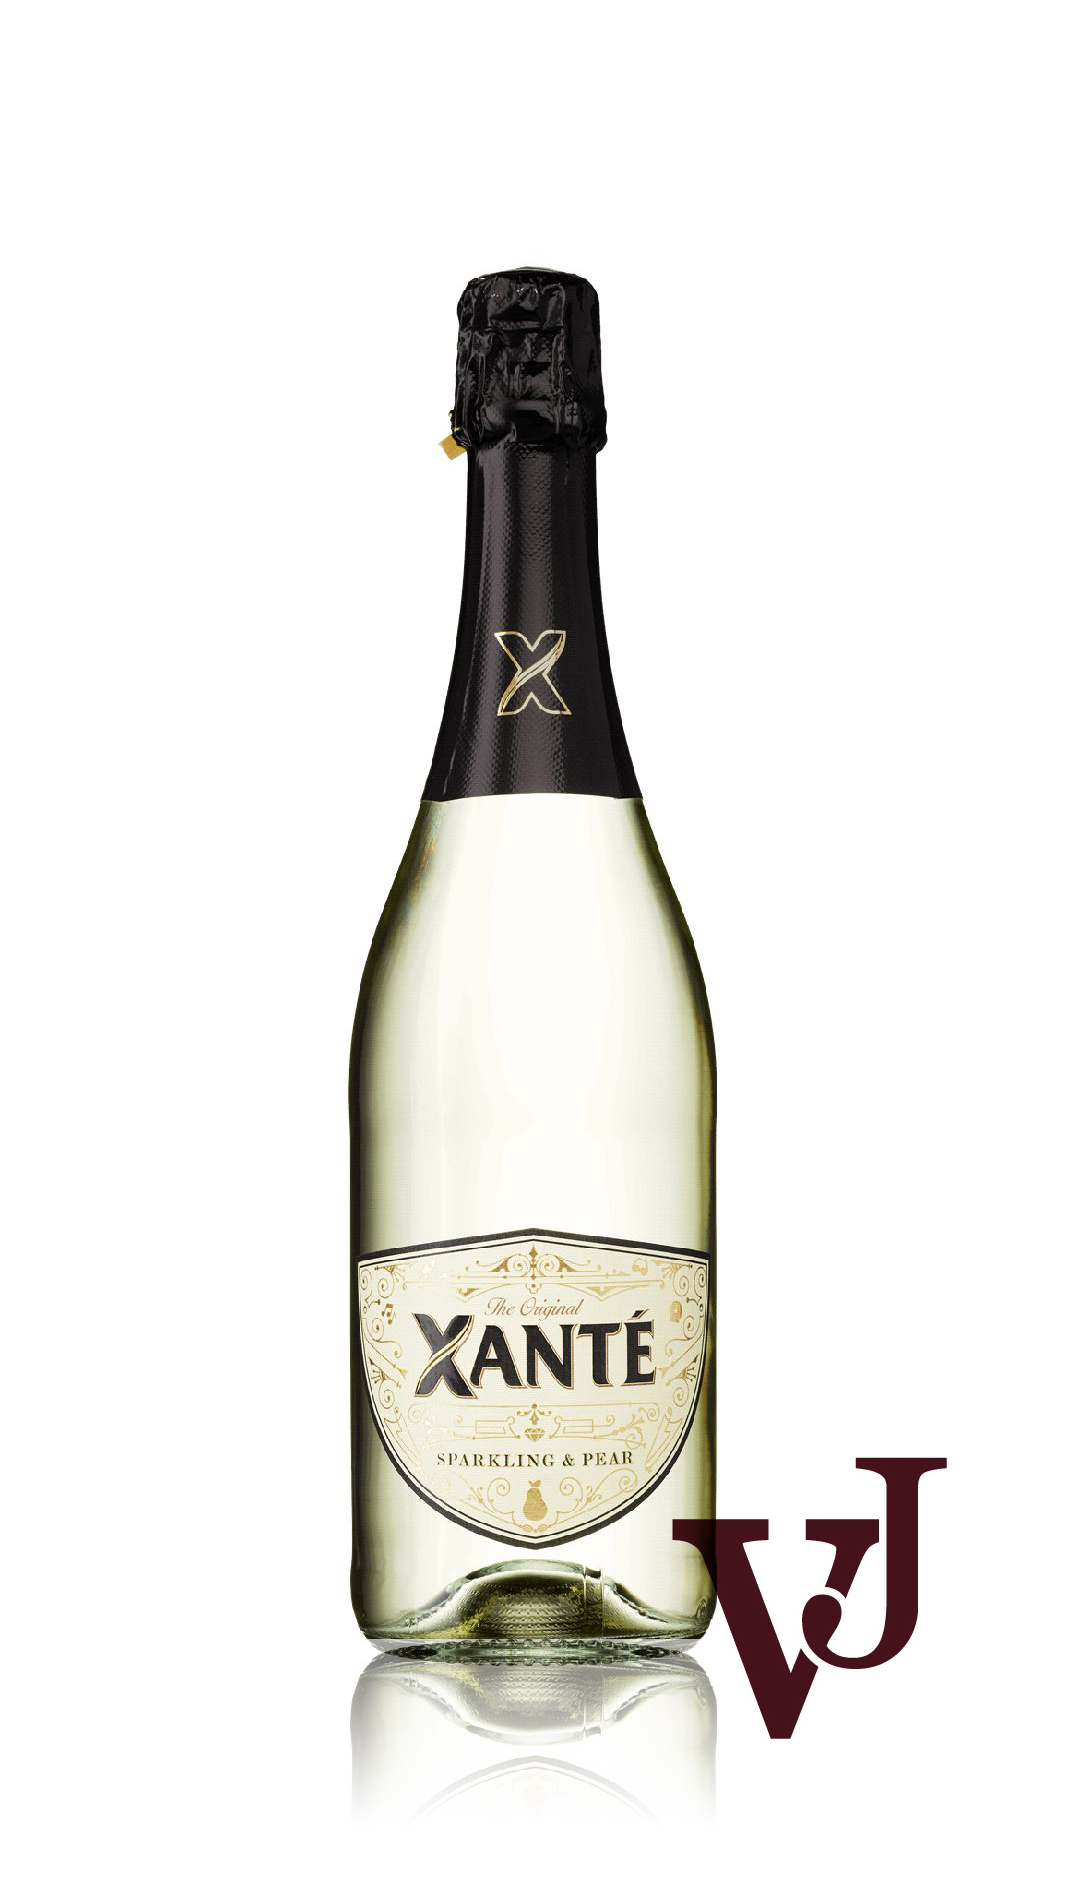 Mousserande Vin - Xanté Sparkling & Pear artikel nummer 7756901 från producenten Altia PLC från området Varumärketärinternationellt